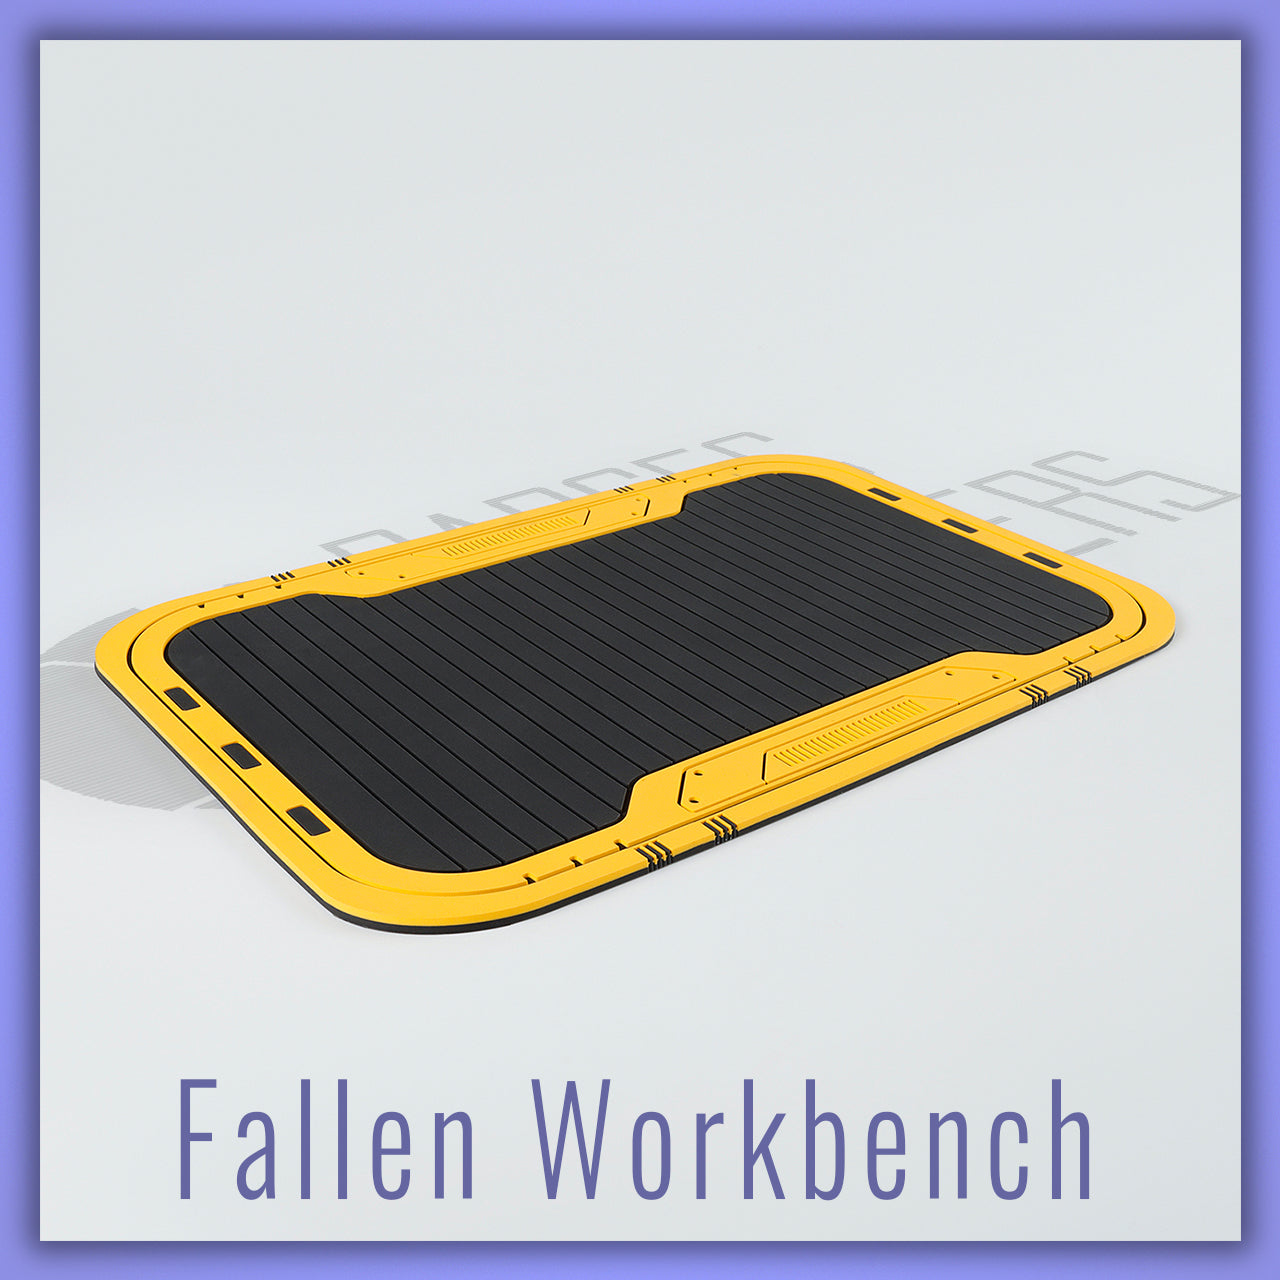 Fallen Lightsaber Workbench Mat - Parsec Saber Accessory & Add-on